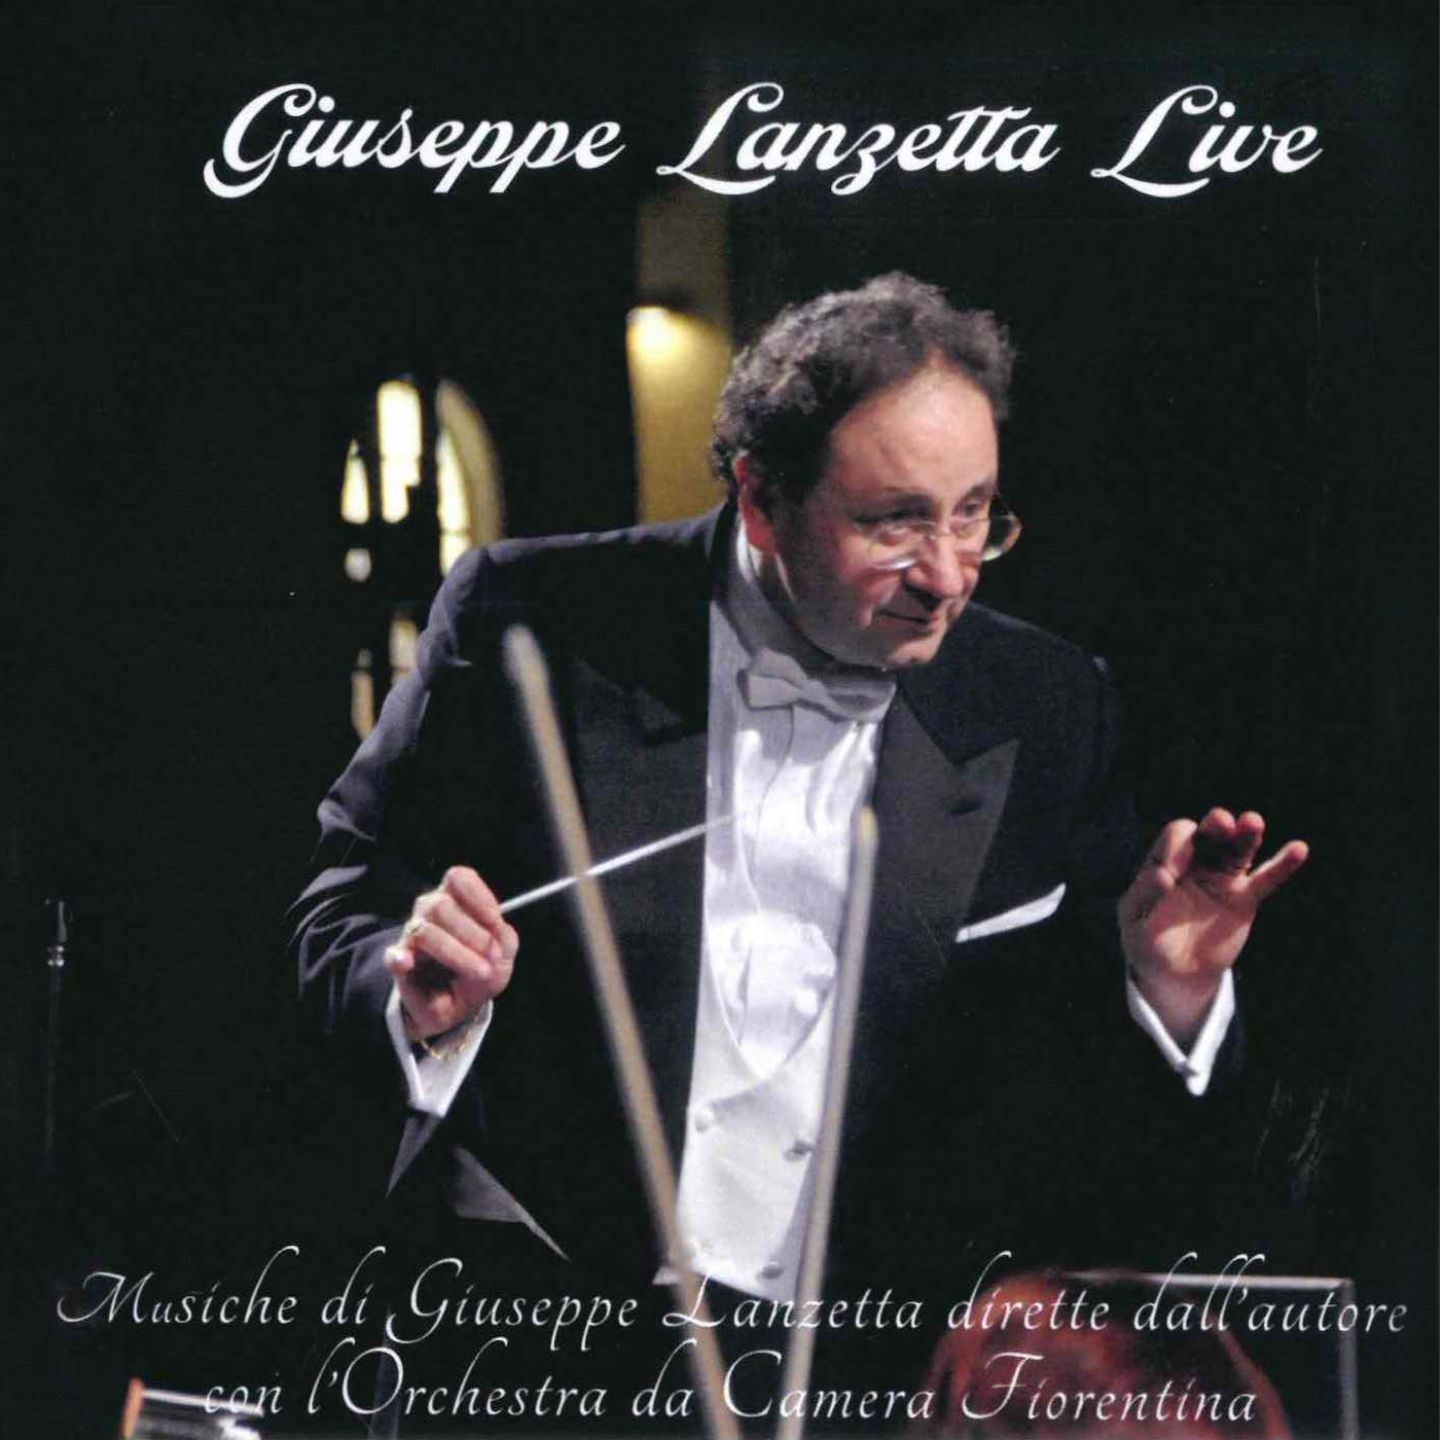 Giuseppe Lanzetta Live